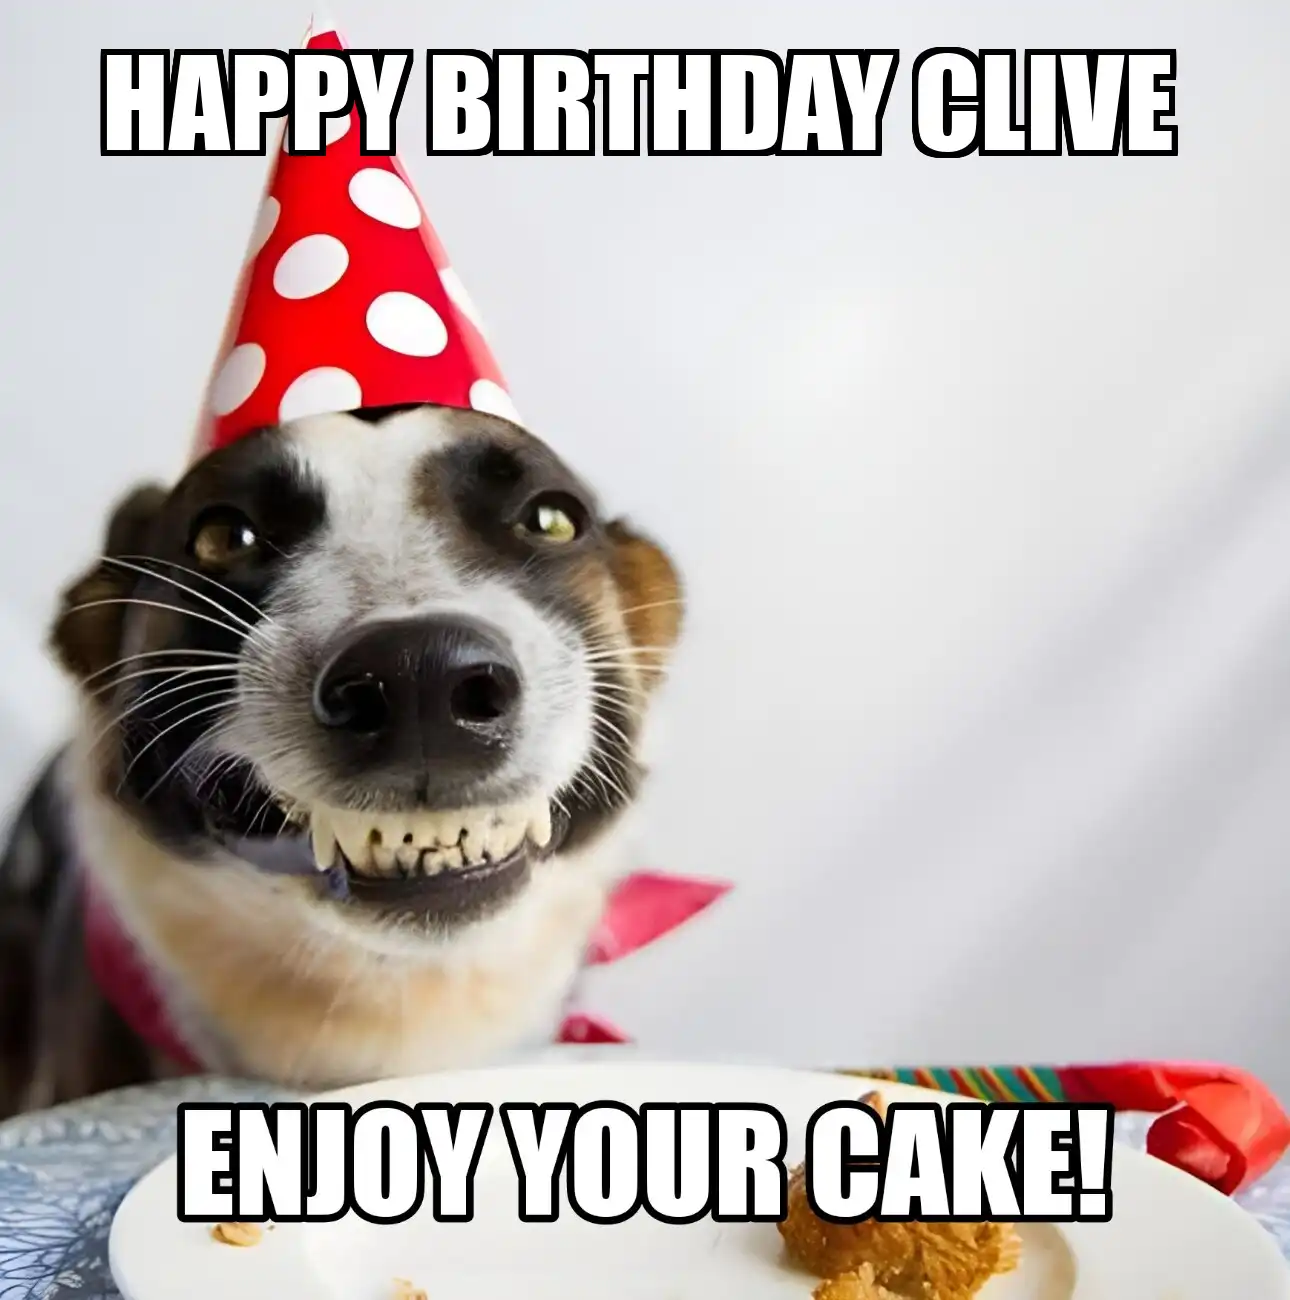 Happy Birthday Clive Enjoy Your Cake Dog Meme